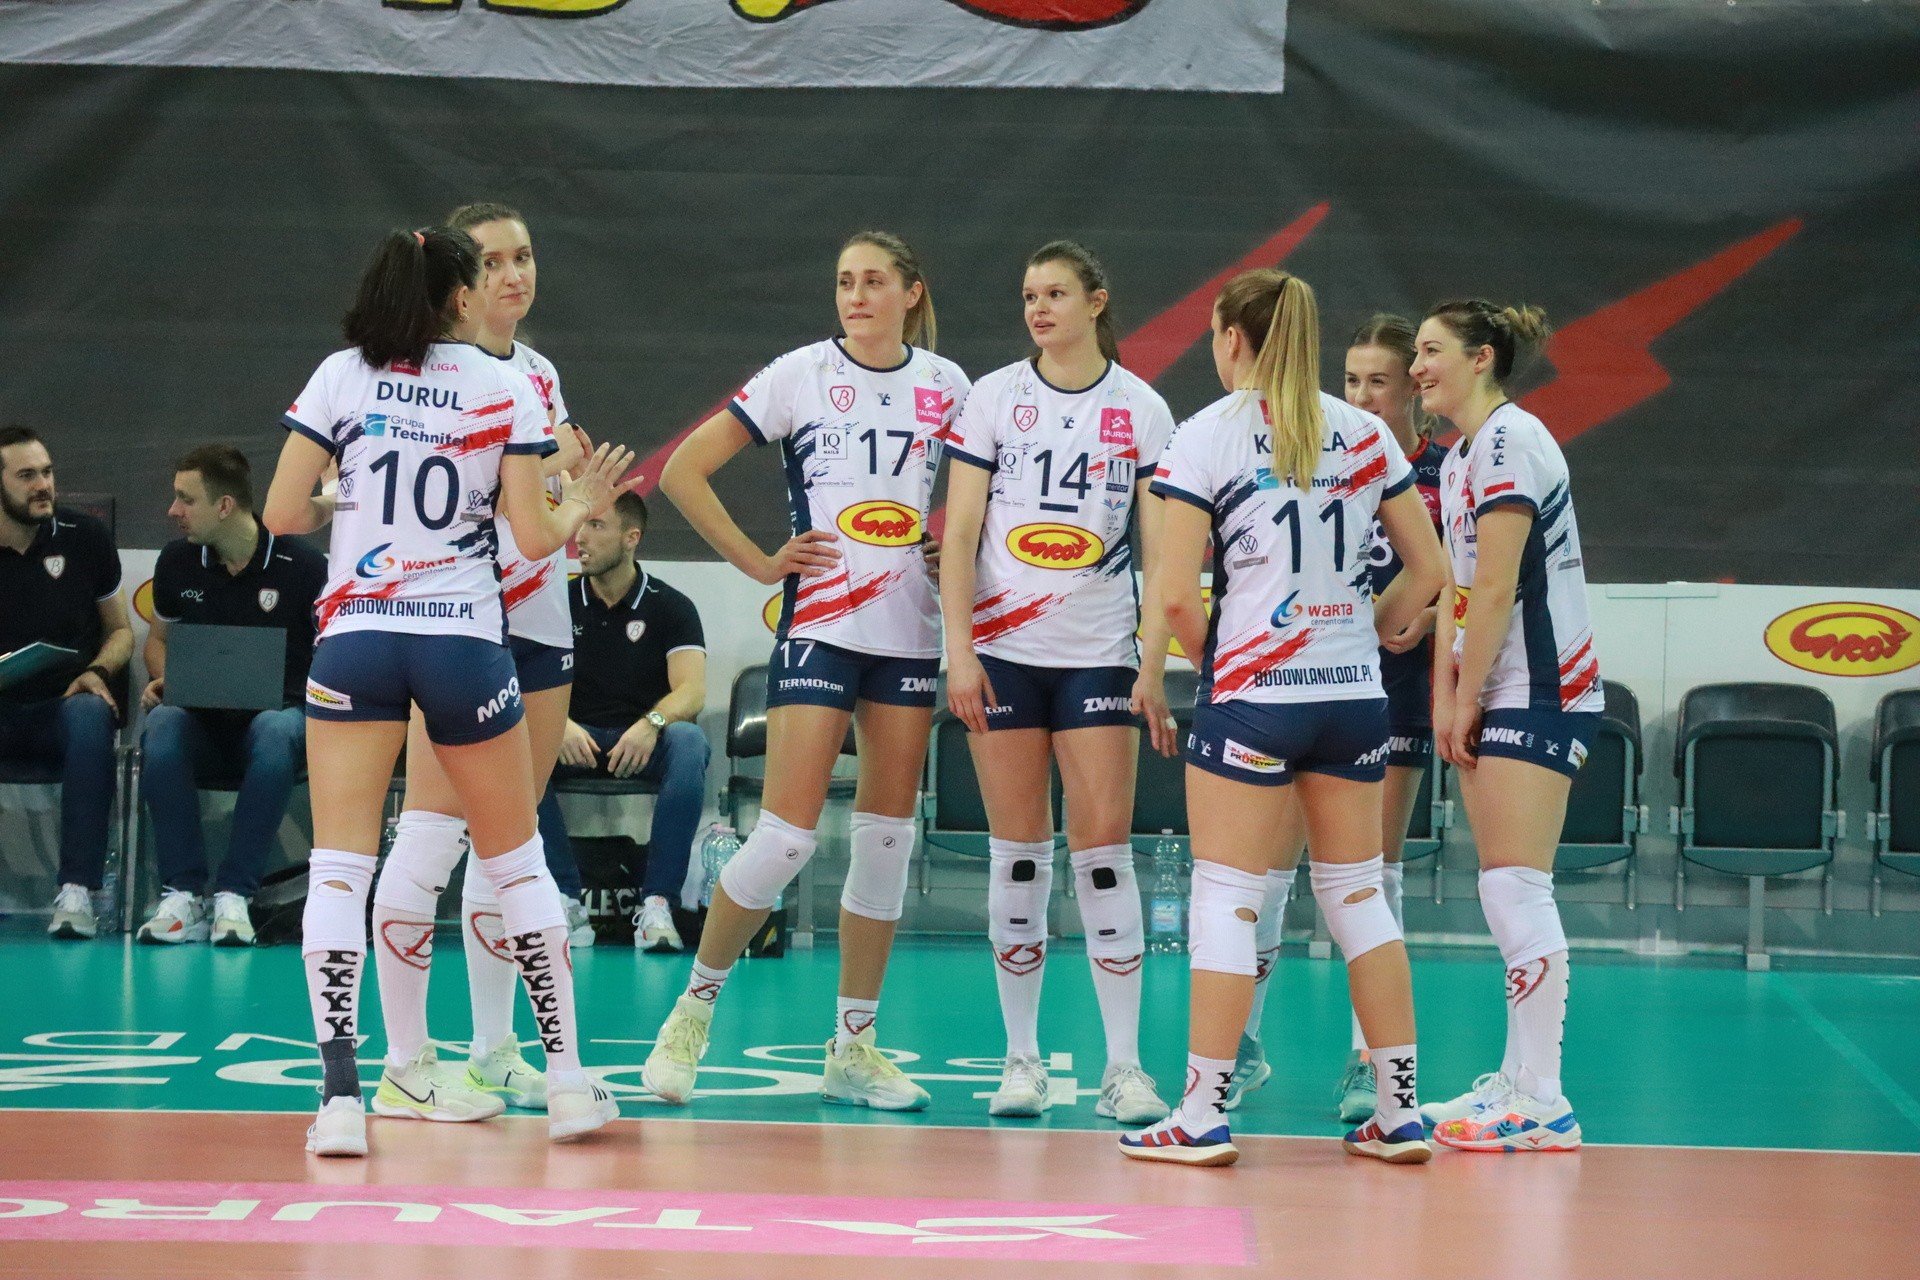 CSO Voluntari – Grot Budowlani.  Hoy, los voleibolistas de Łódź quieren avanzar en la Copa CEV